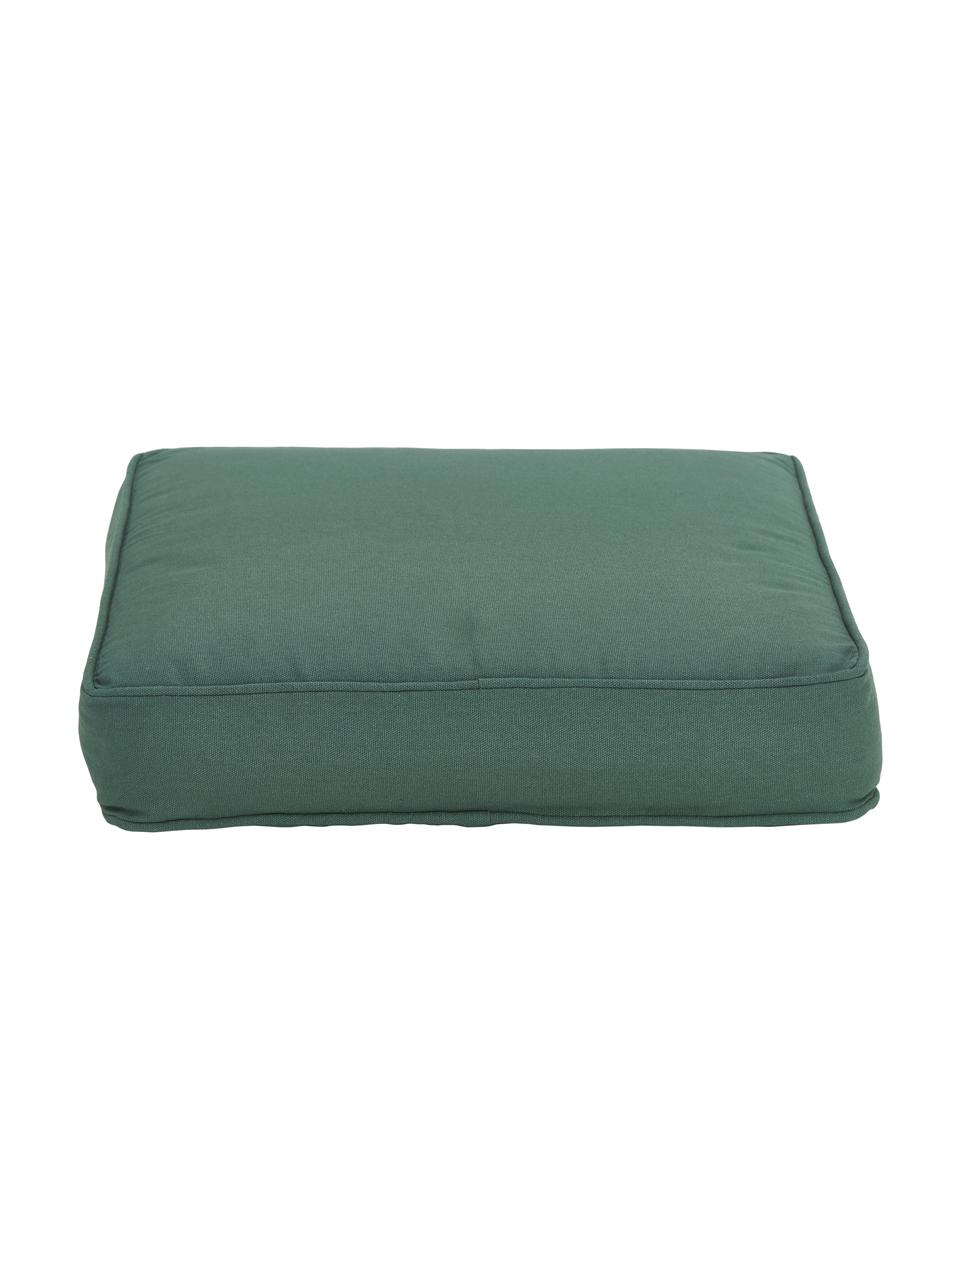 Cojín para silla alto de algodón Zoey, Funda: 100% algodón, Verde oscuro, An 40 x L 40 cm